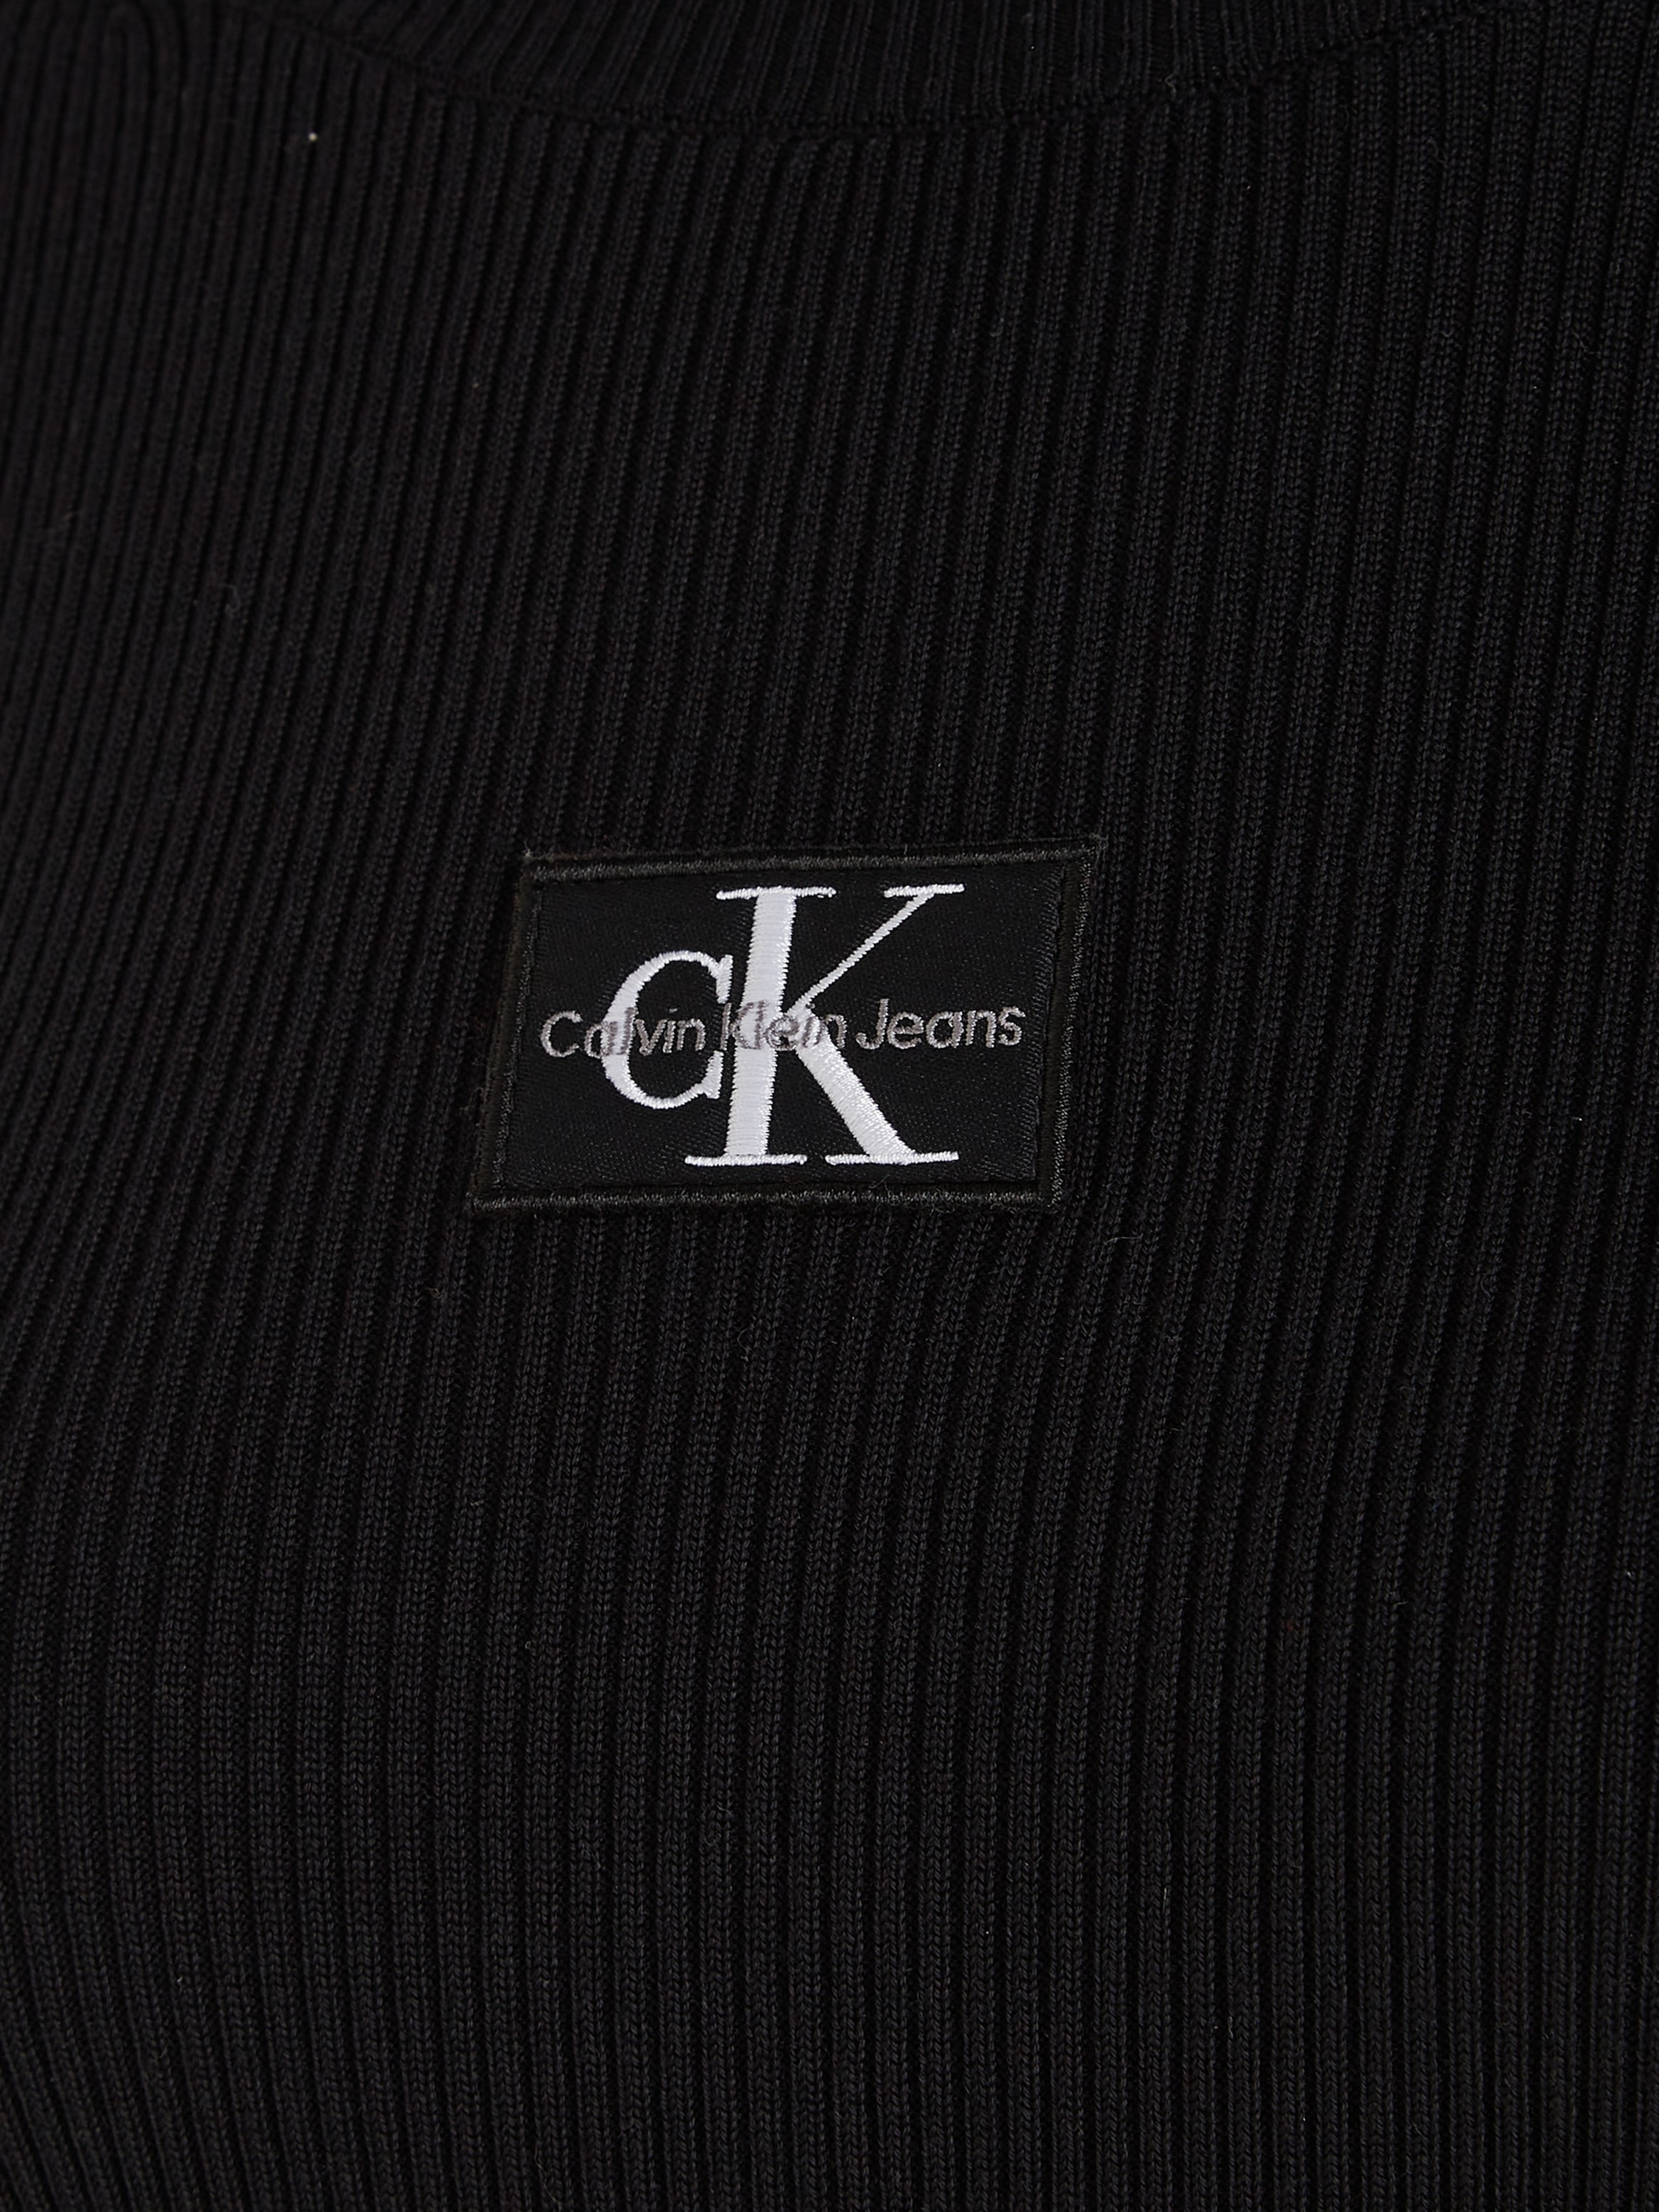 ROLL bestellen Jeans BAUR NECK Strickkleid DRESS« online Calvin | »BADGE SWEATER Klein